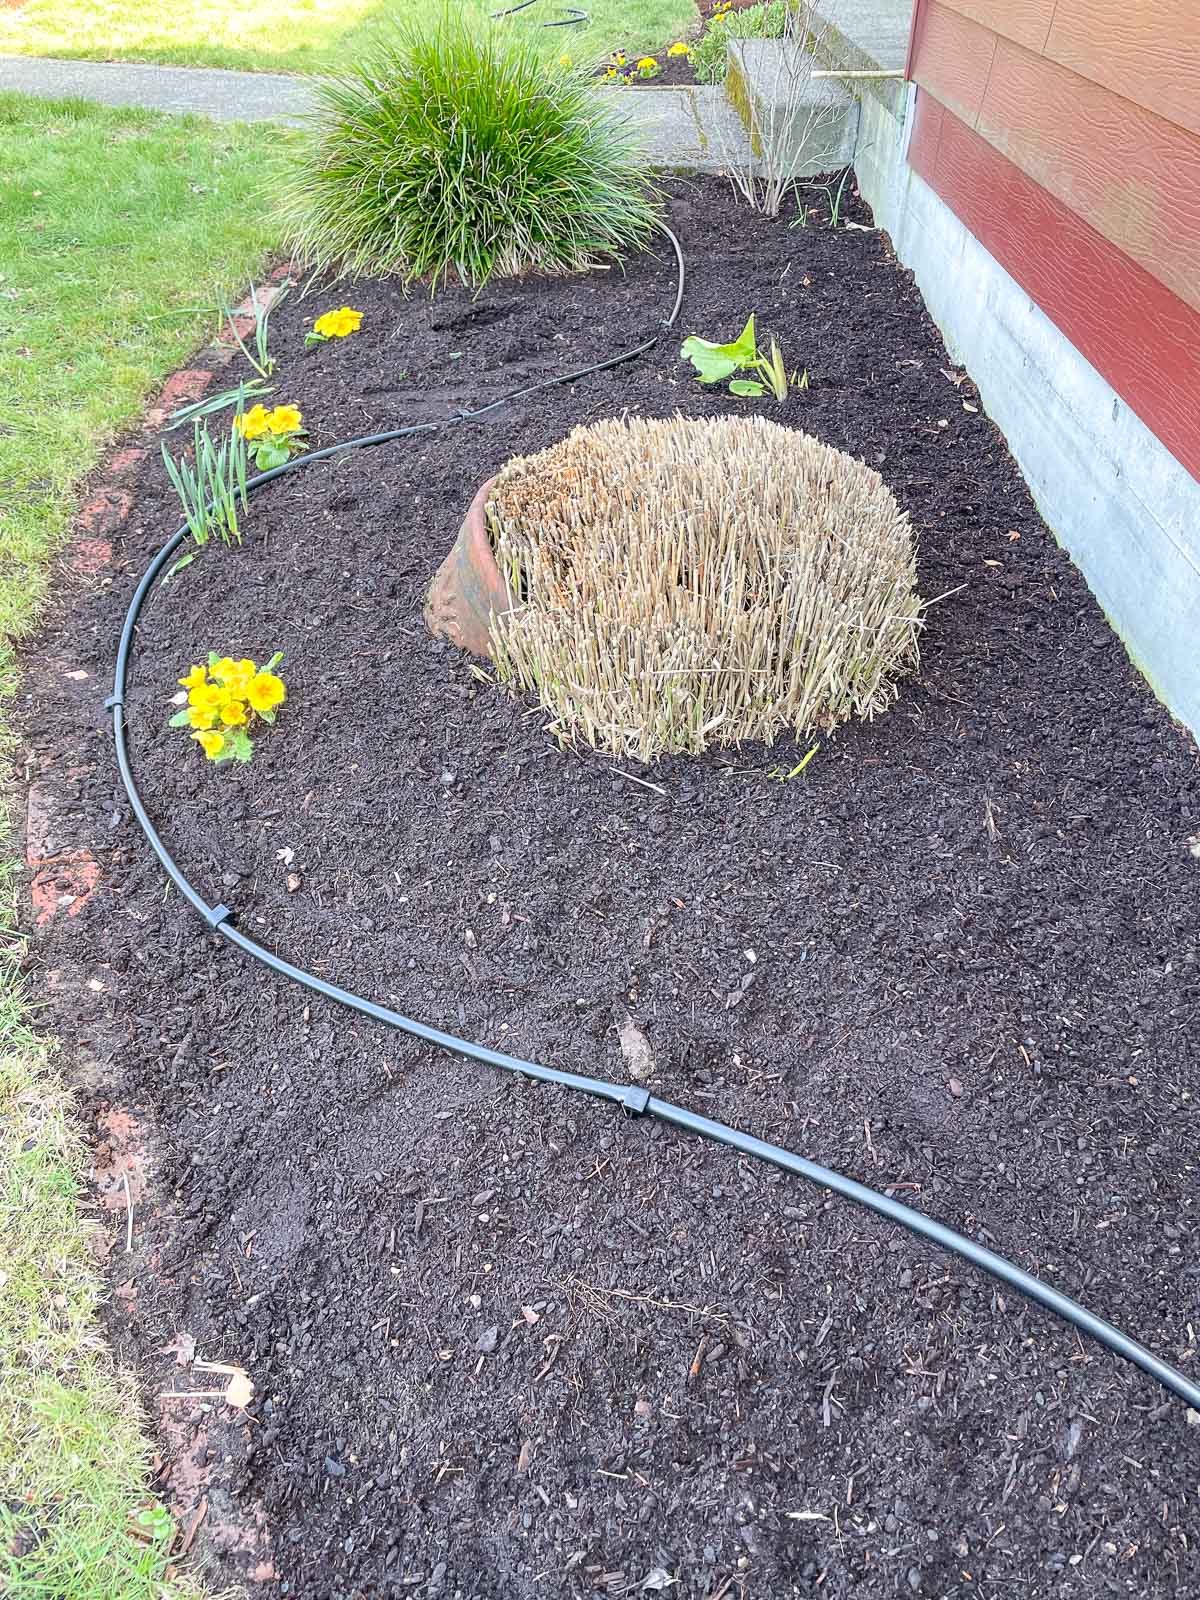 ¾" drip irrigation supply line throughout garden bed